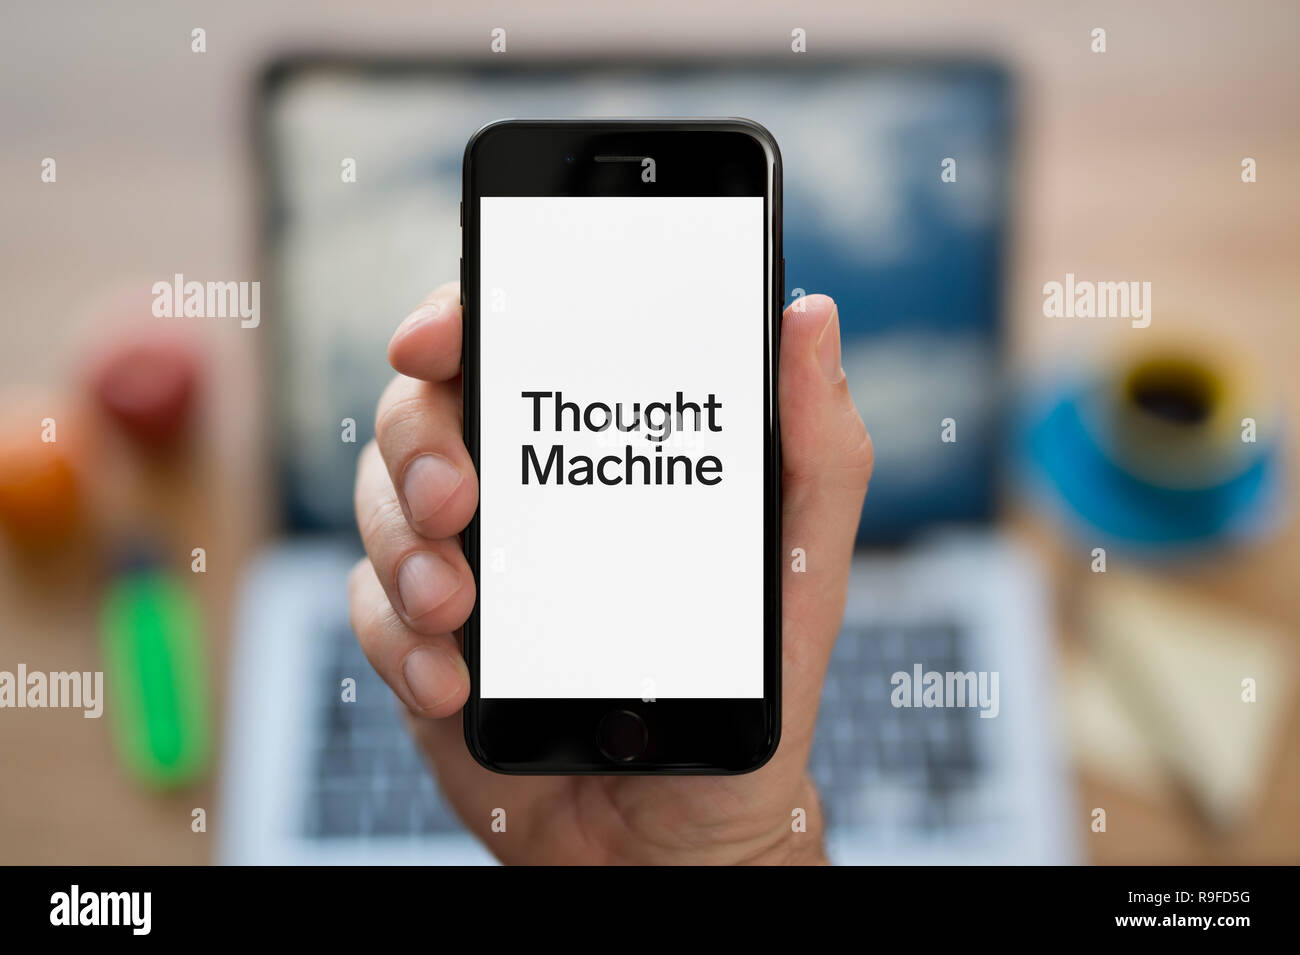 Un homme se penche sur son iPhone qui affiche le logo Machine pensée (usage éditorial uniquement). Banque D'Images